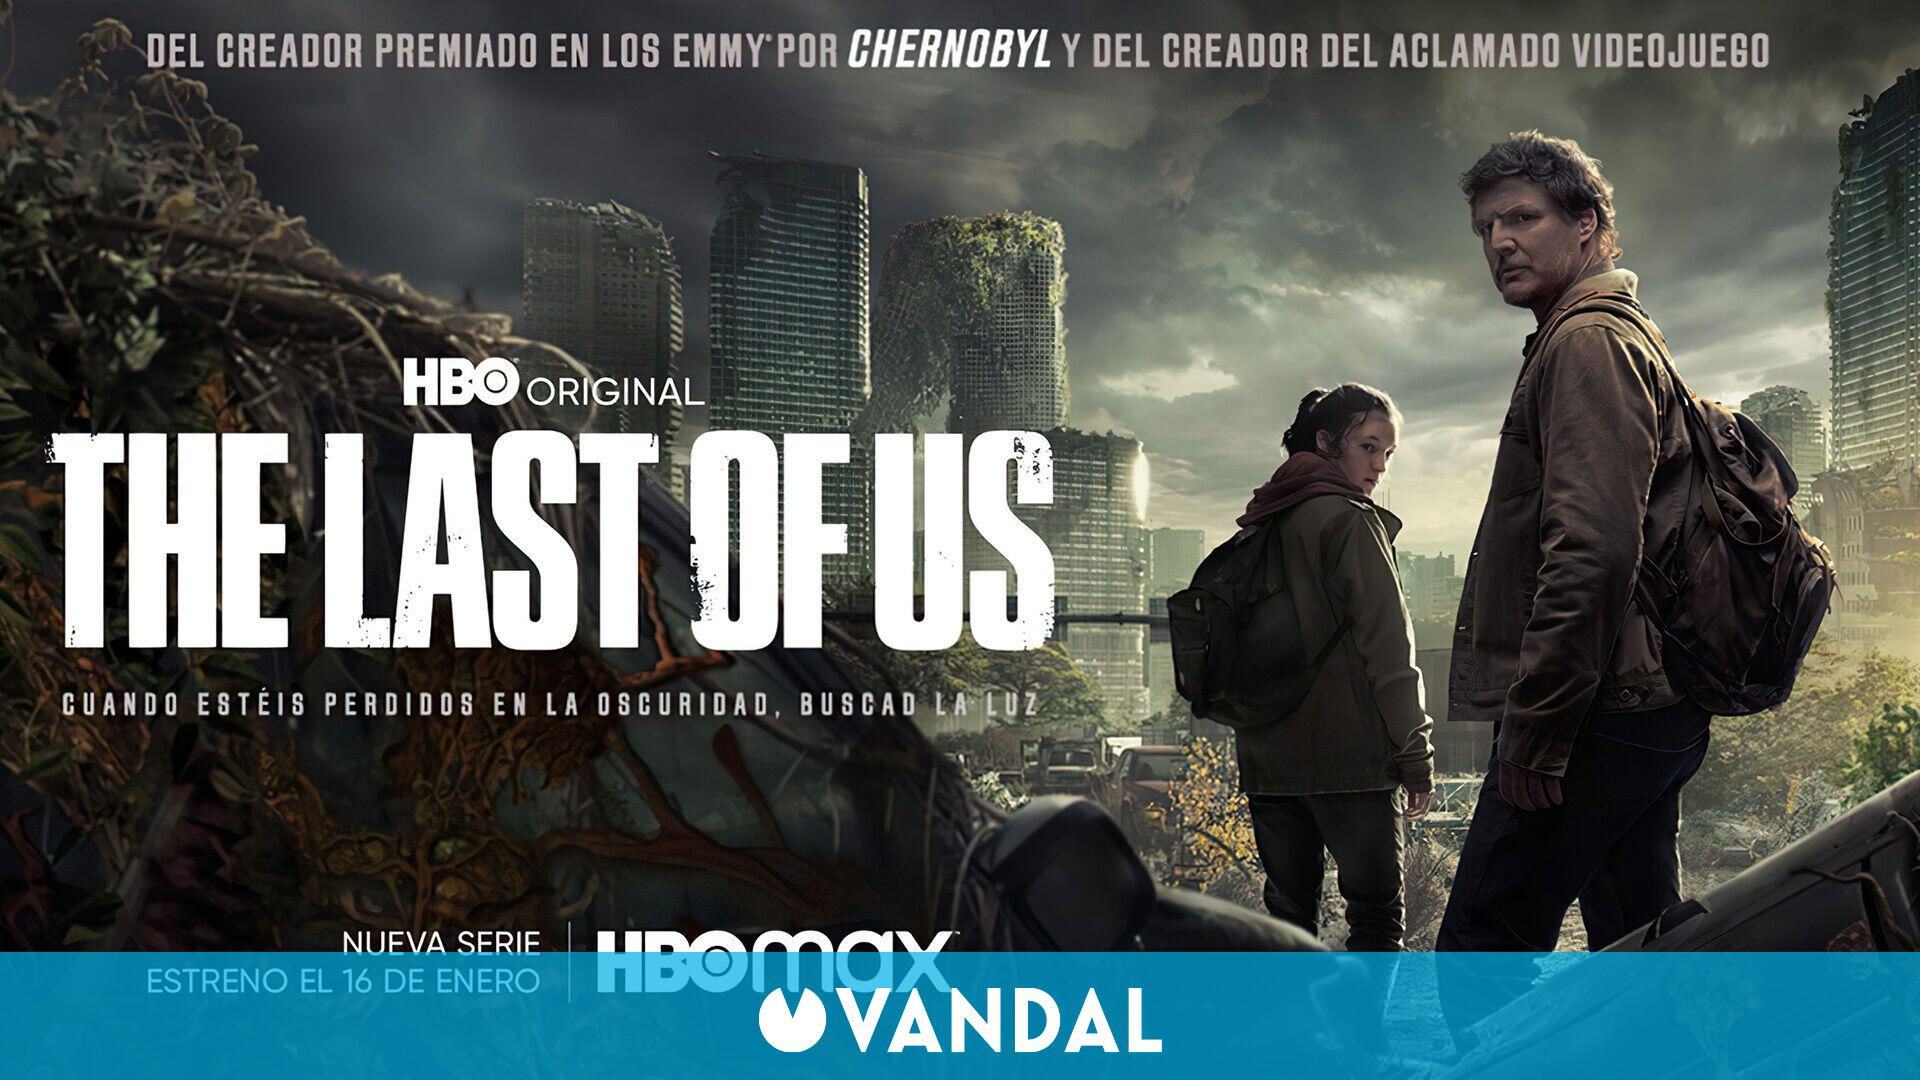 The Last of Us en HBO presenta un nuevo póster oficial que recuerda a la carátula original